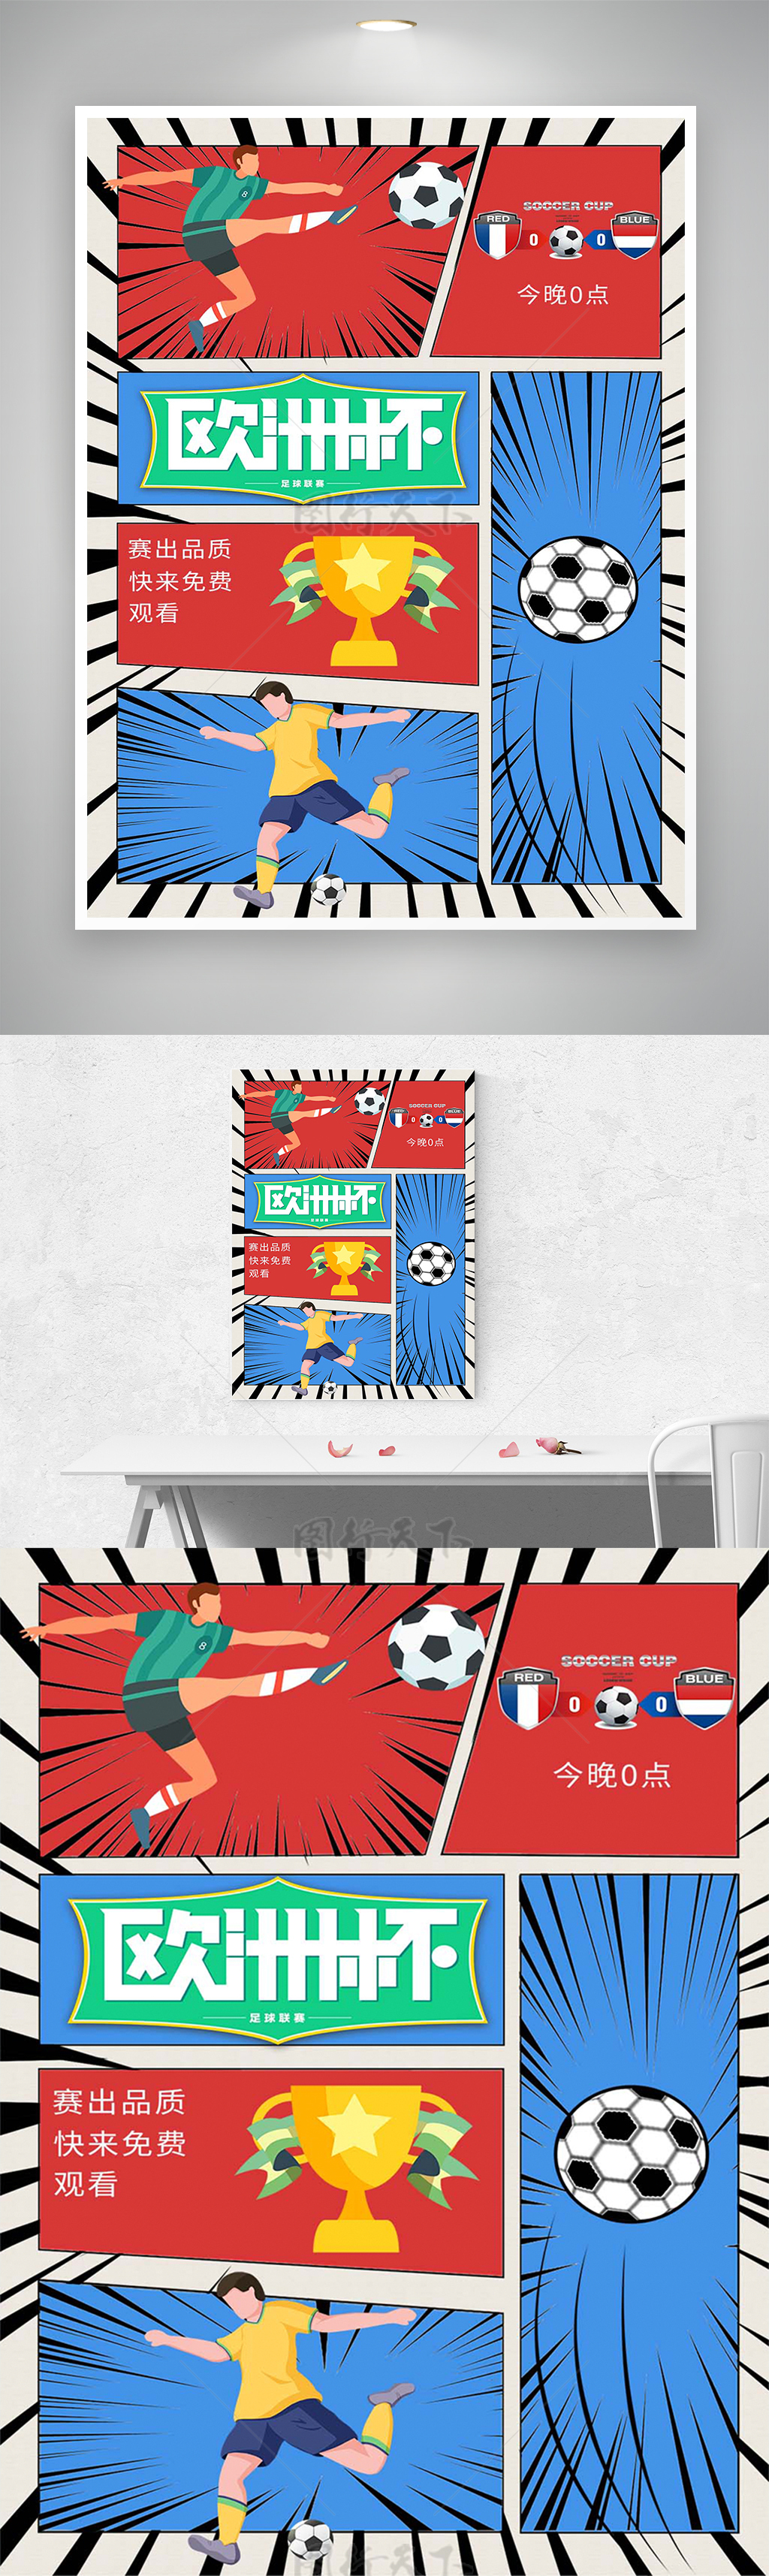 卡通漫画风欧洲杯赛事宣传海报